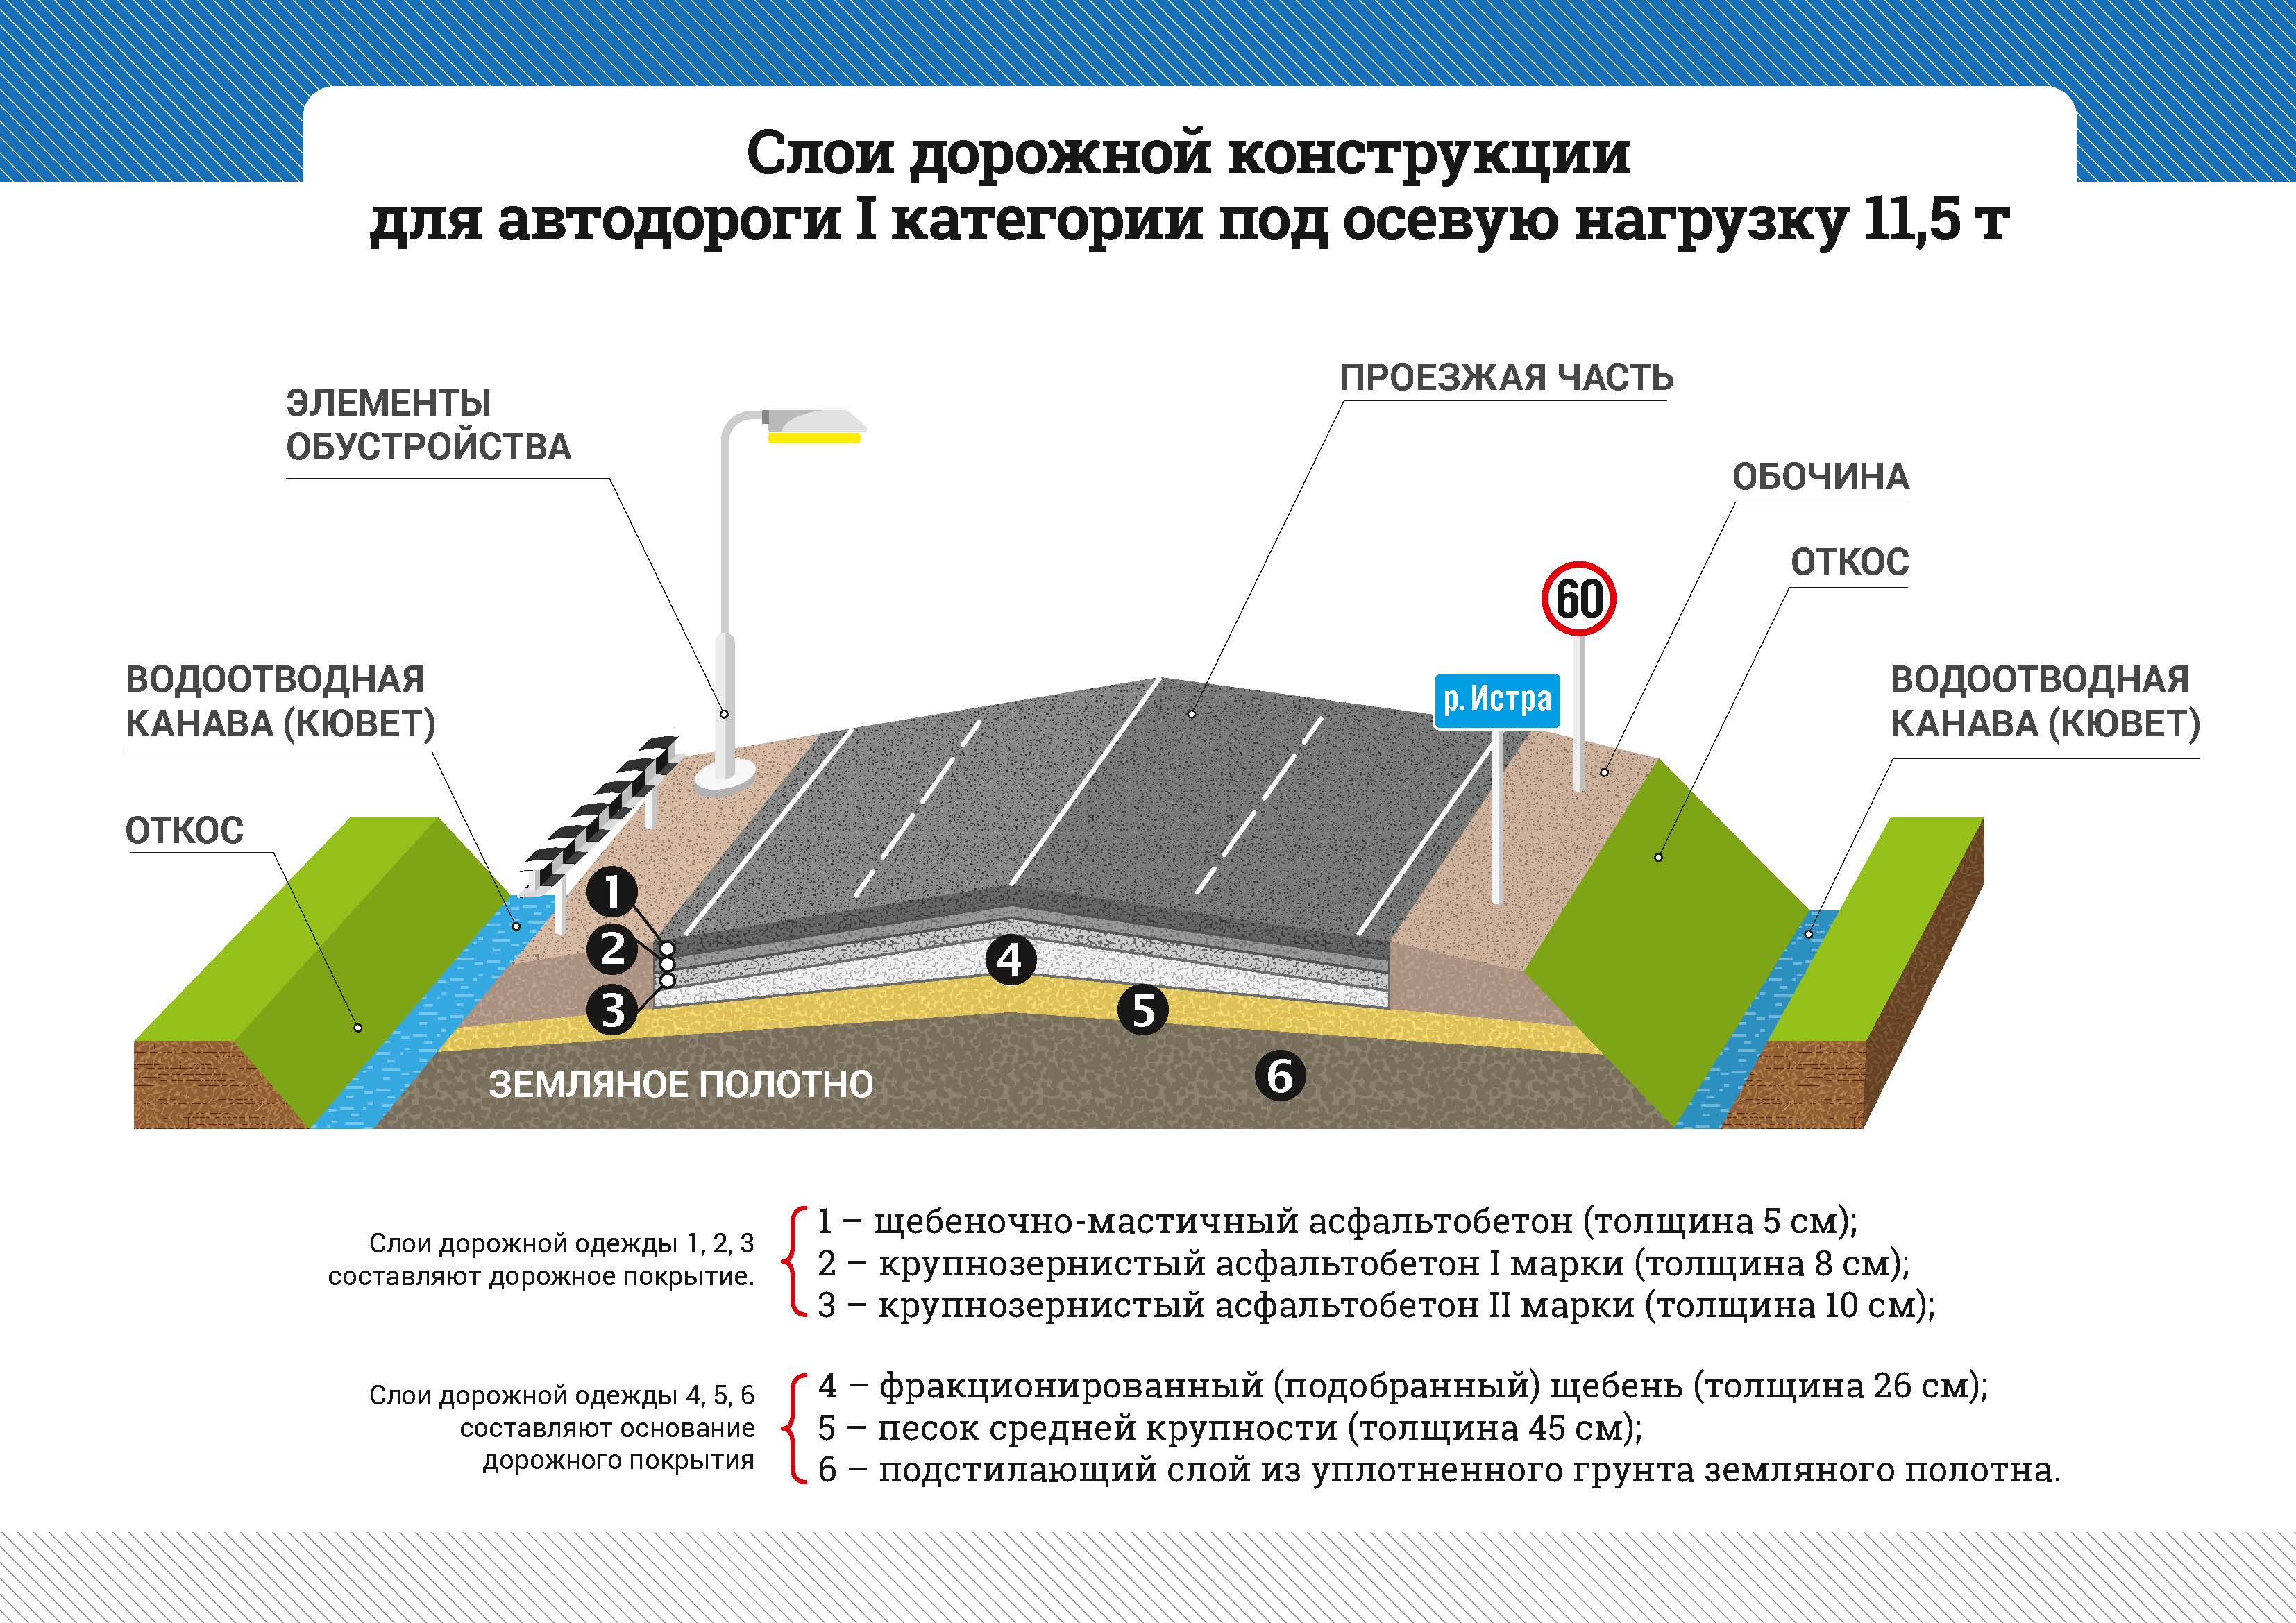 Категории дорог. классификация дорог по категориям. категории автомобильных дорог :: businessman.ru